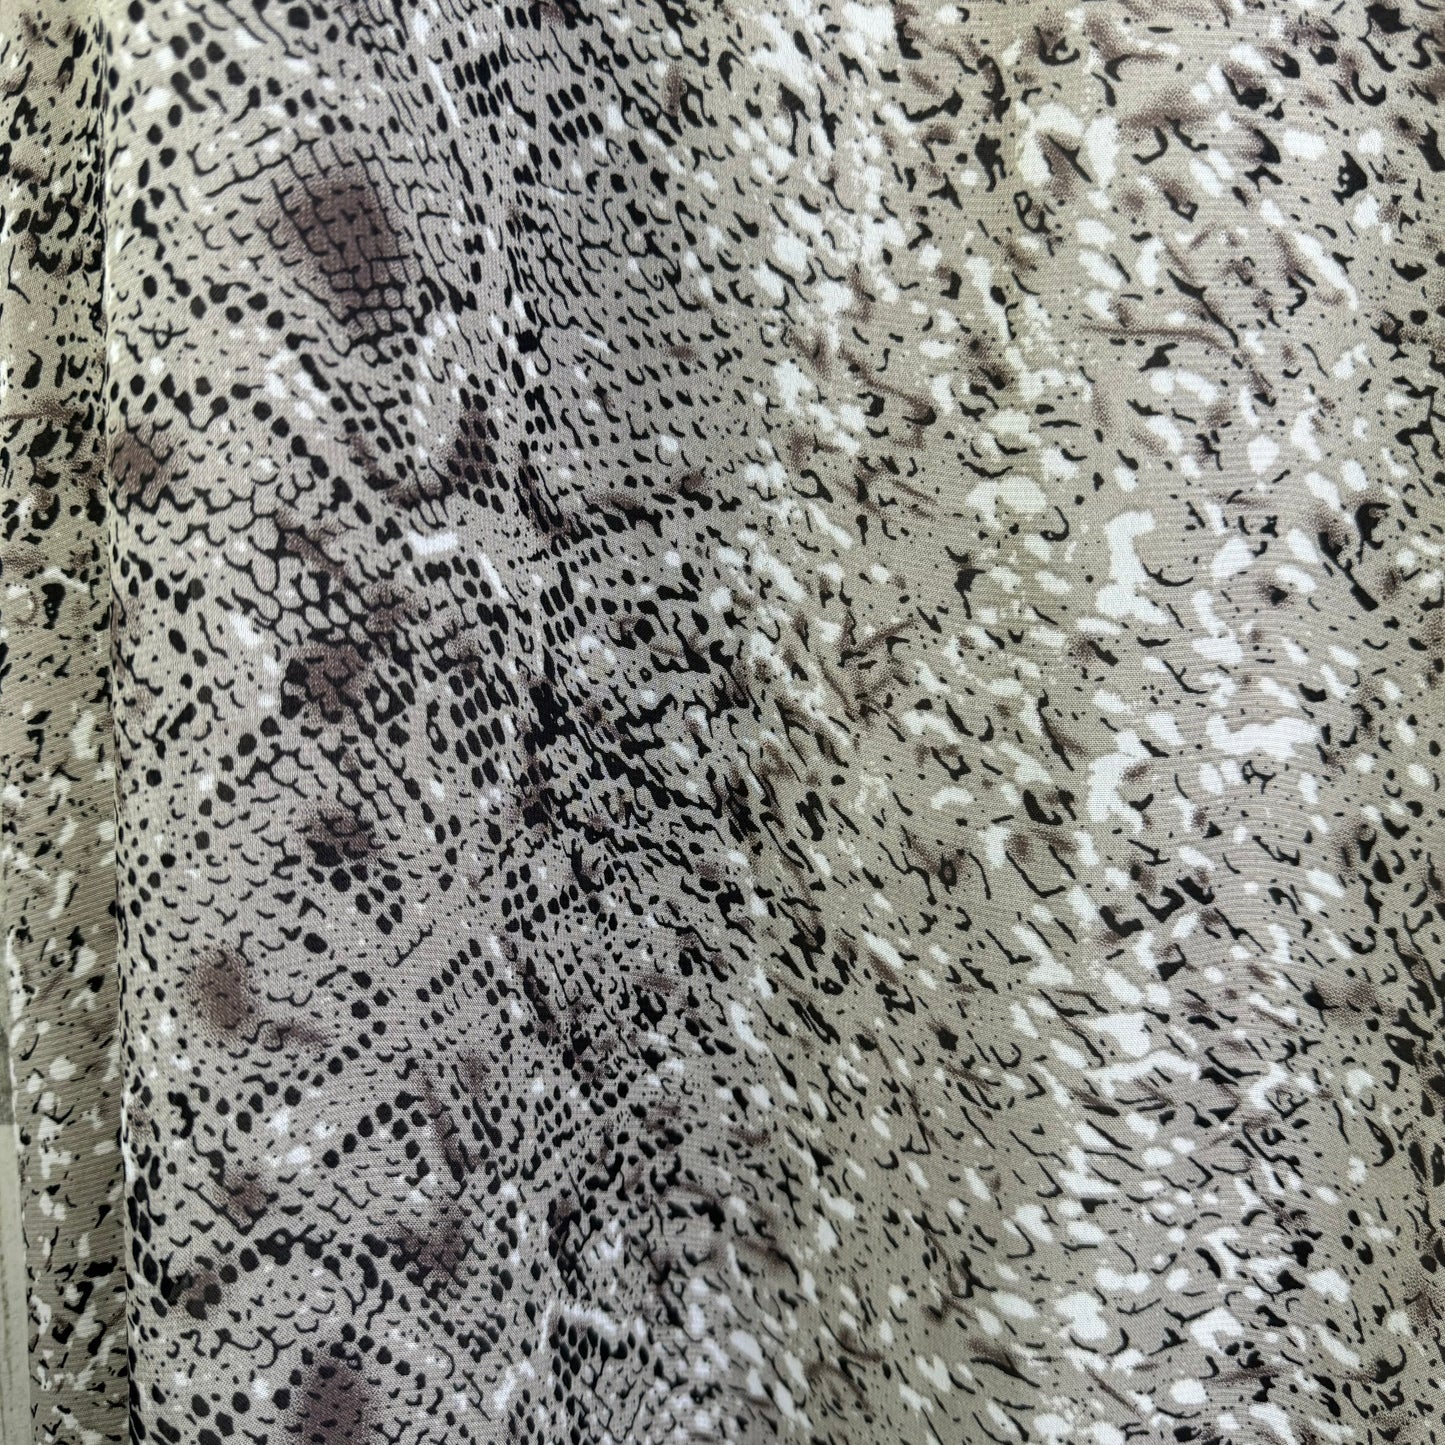 Snakeskin Print Dress Casual Maxi En Creme, Size M